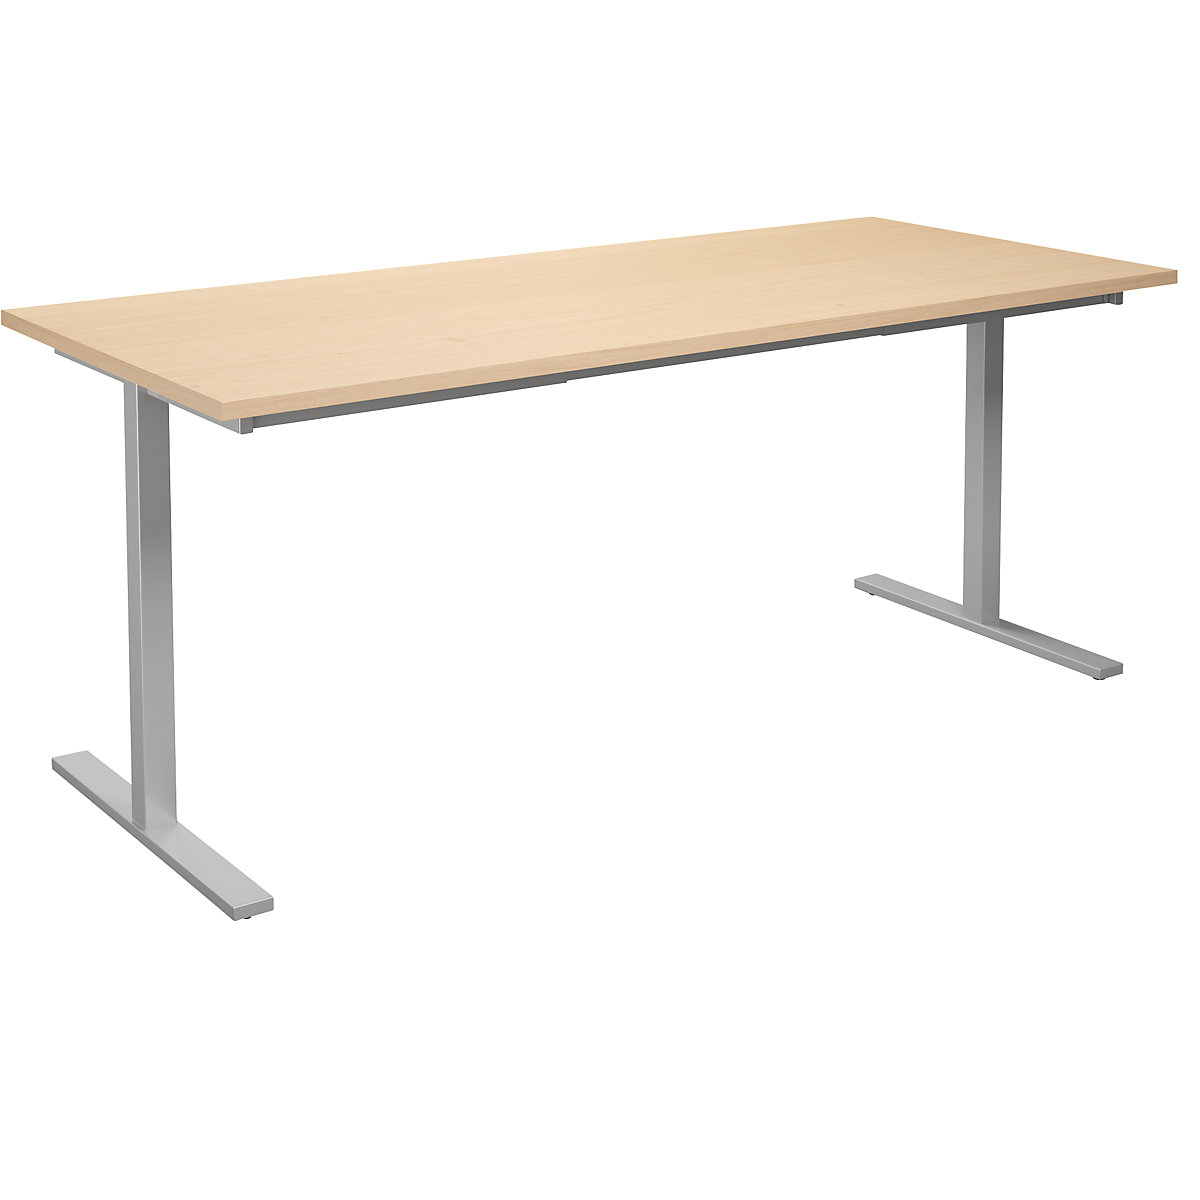 DUO-T univerzális asztal, egyenes asztallappal